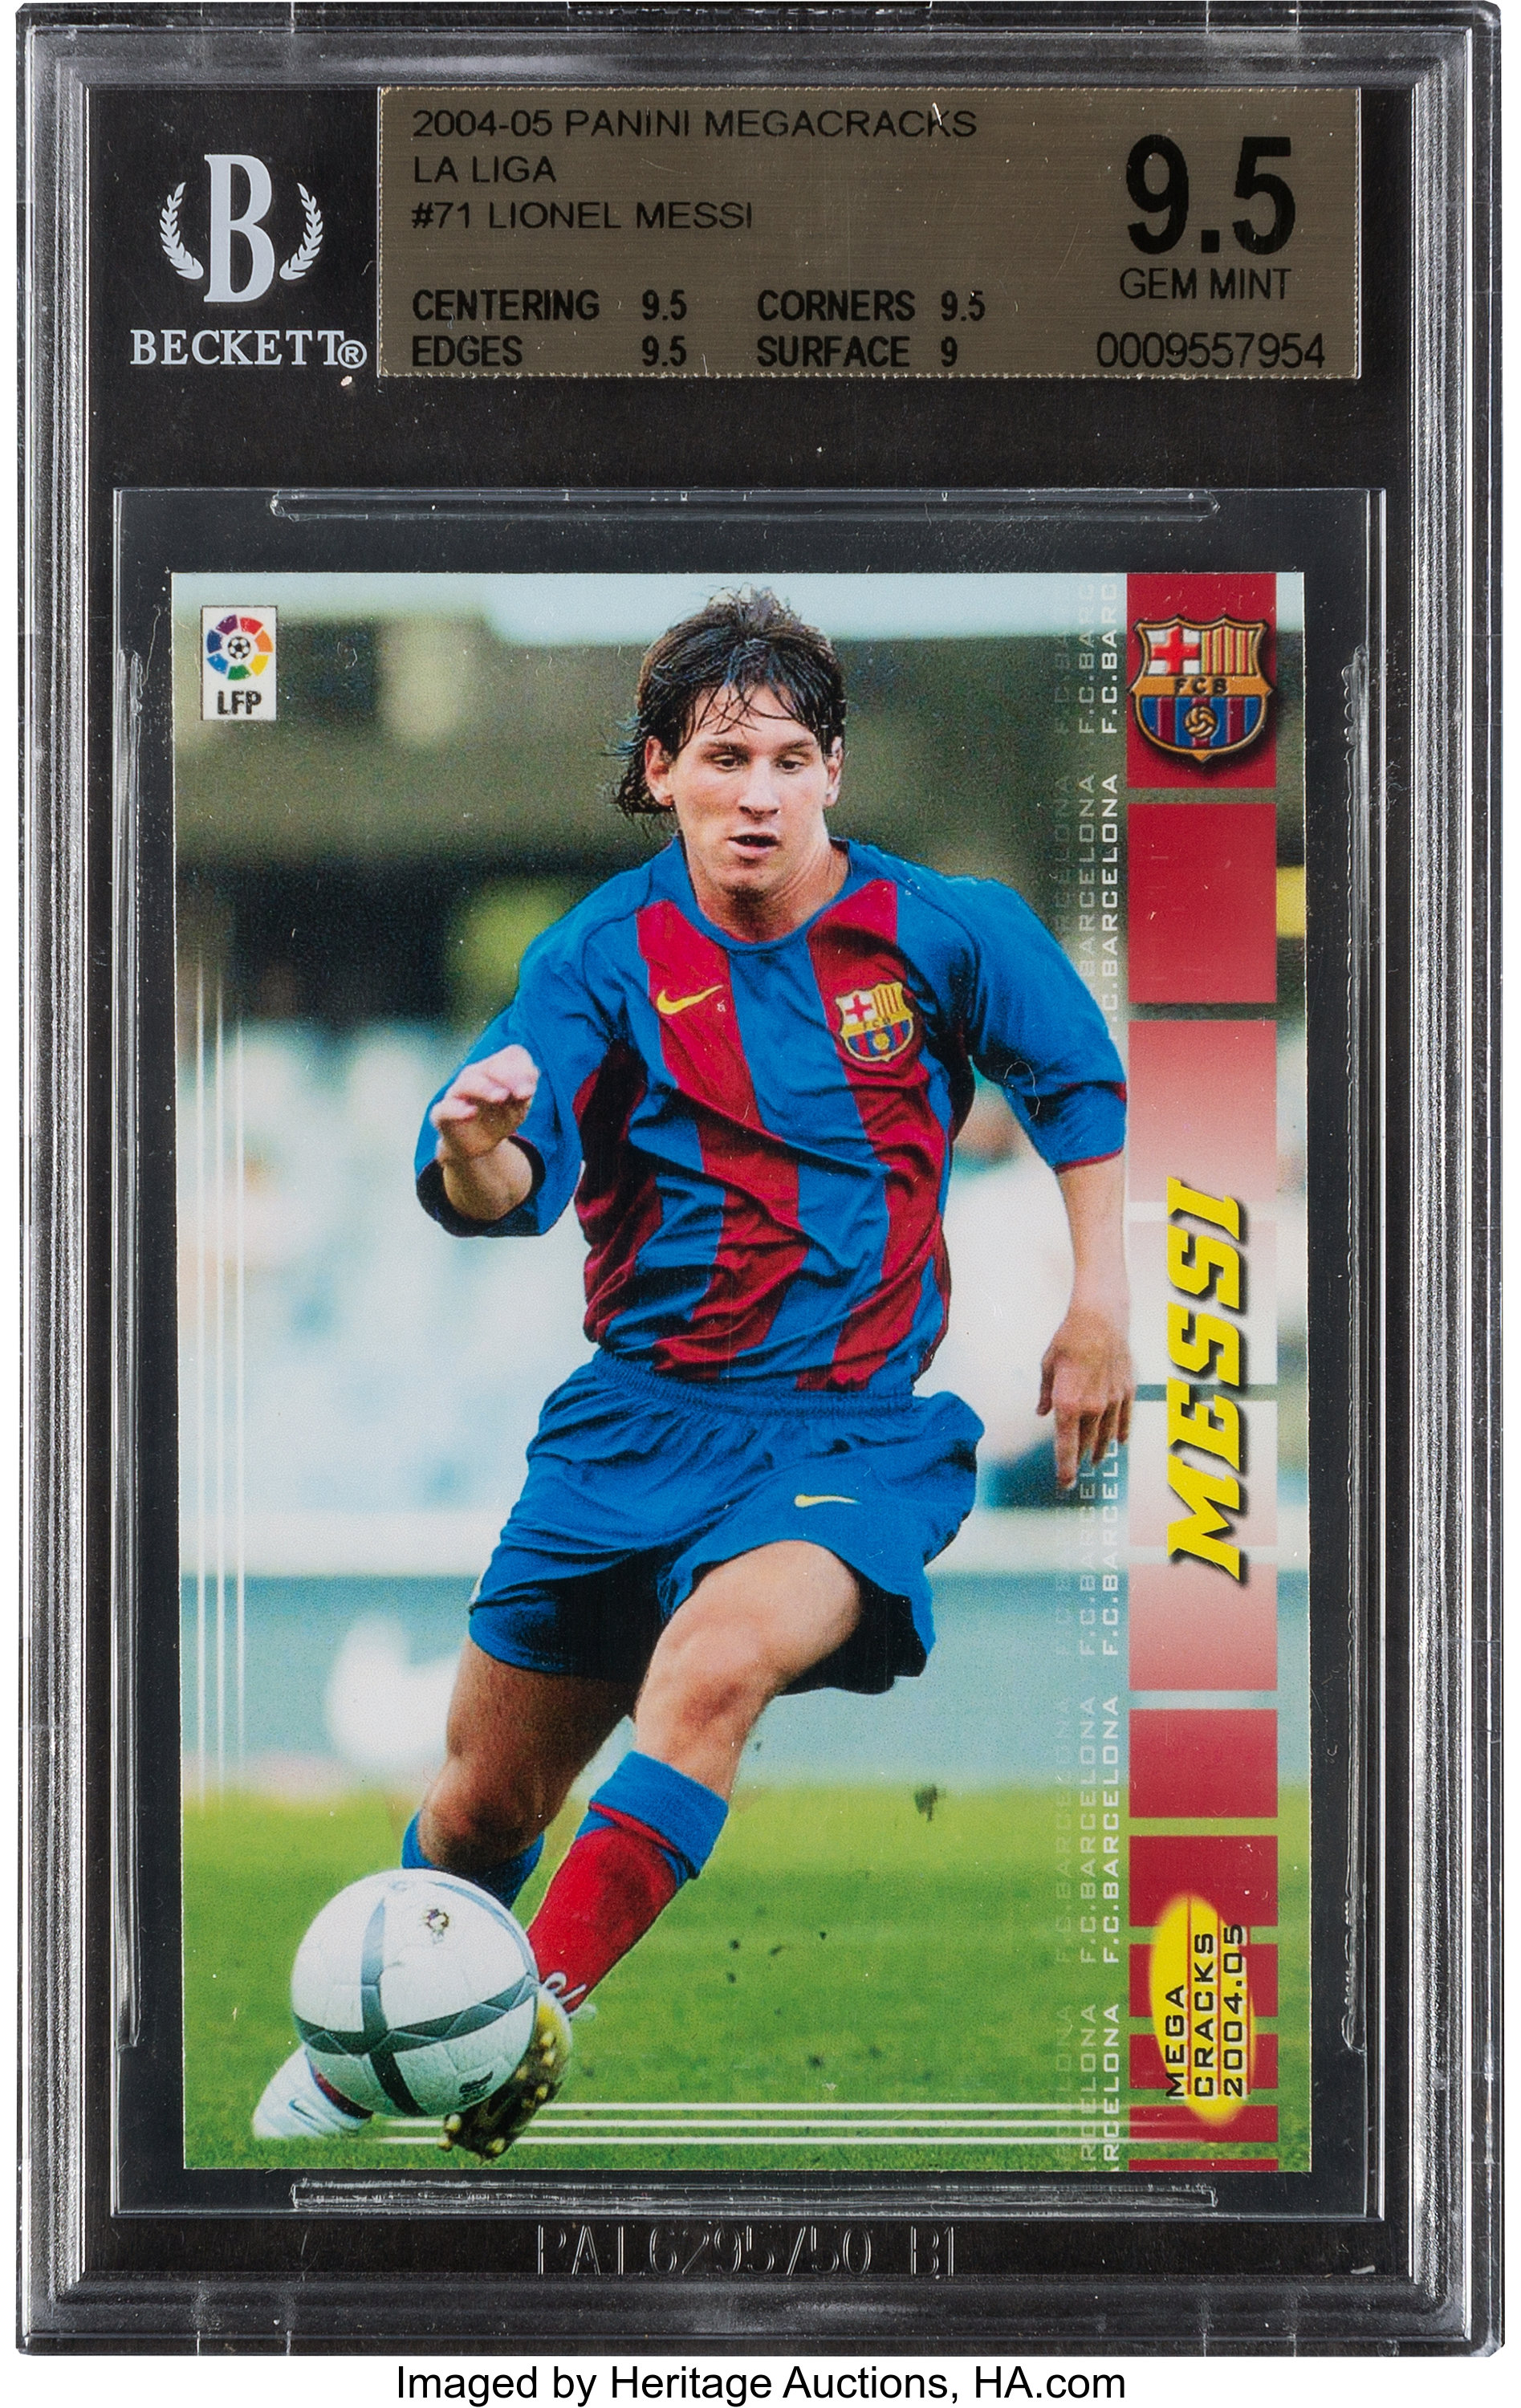 2004-05 Panini Megacracks La Liga Lionel Messi #71 BIS, BGS Gem